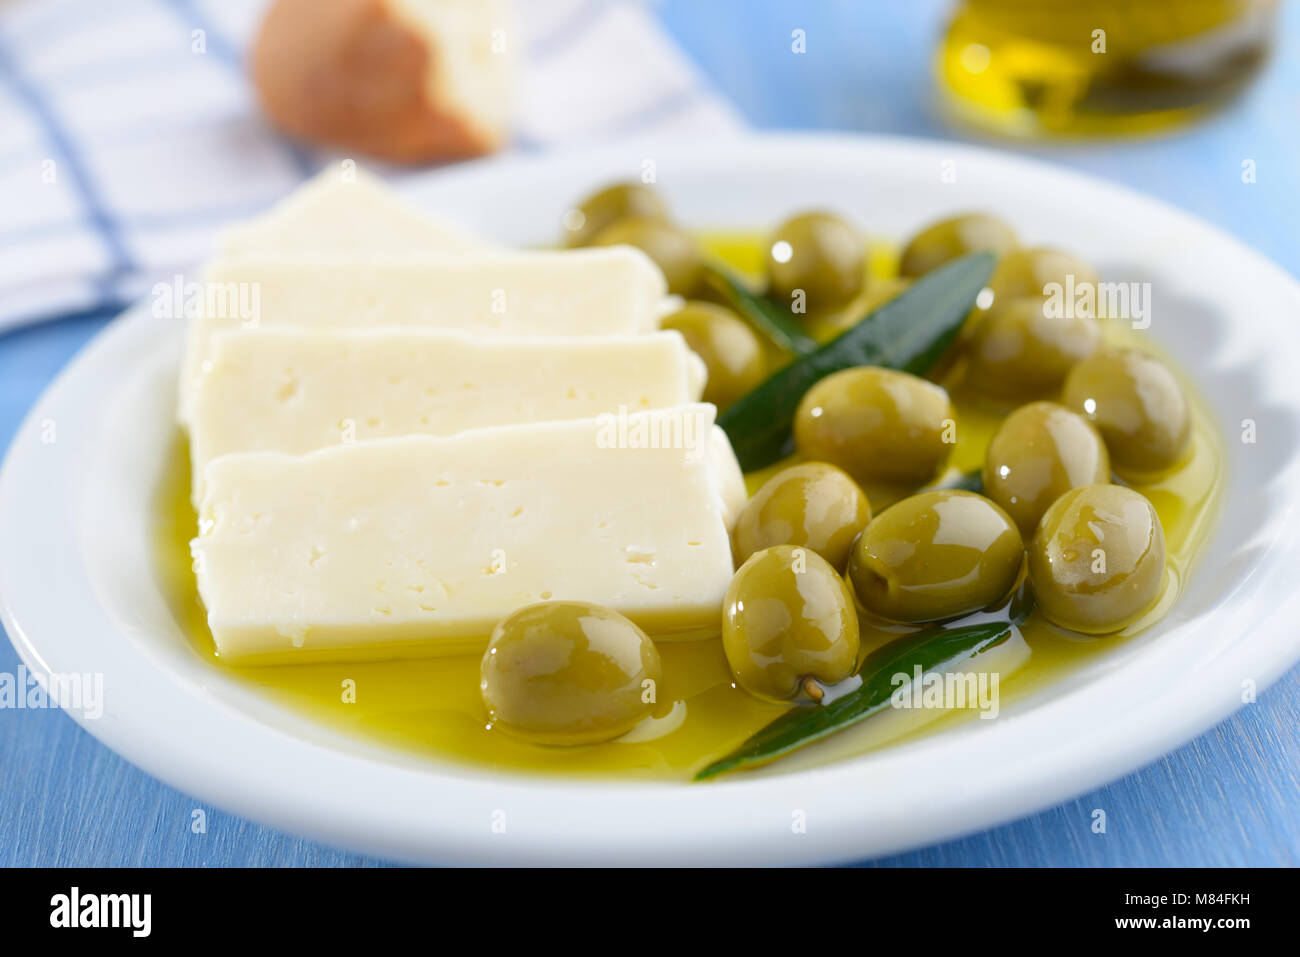 Tranches de fromage Feta et olives vertes sur une plaque Banque D'Images